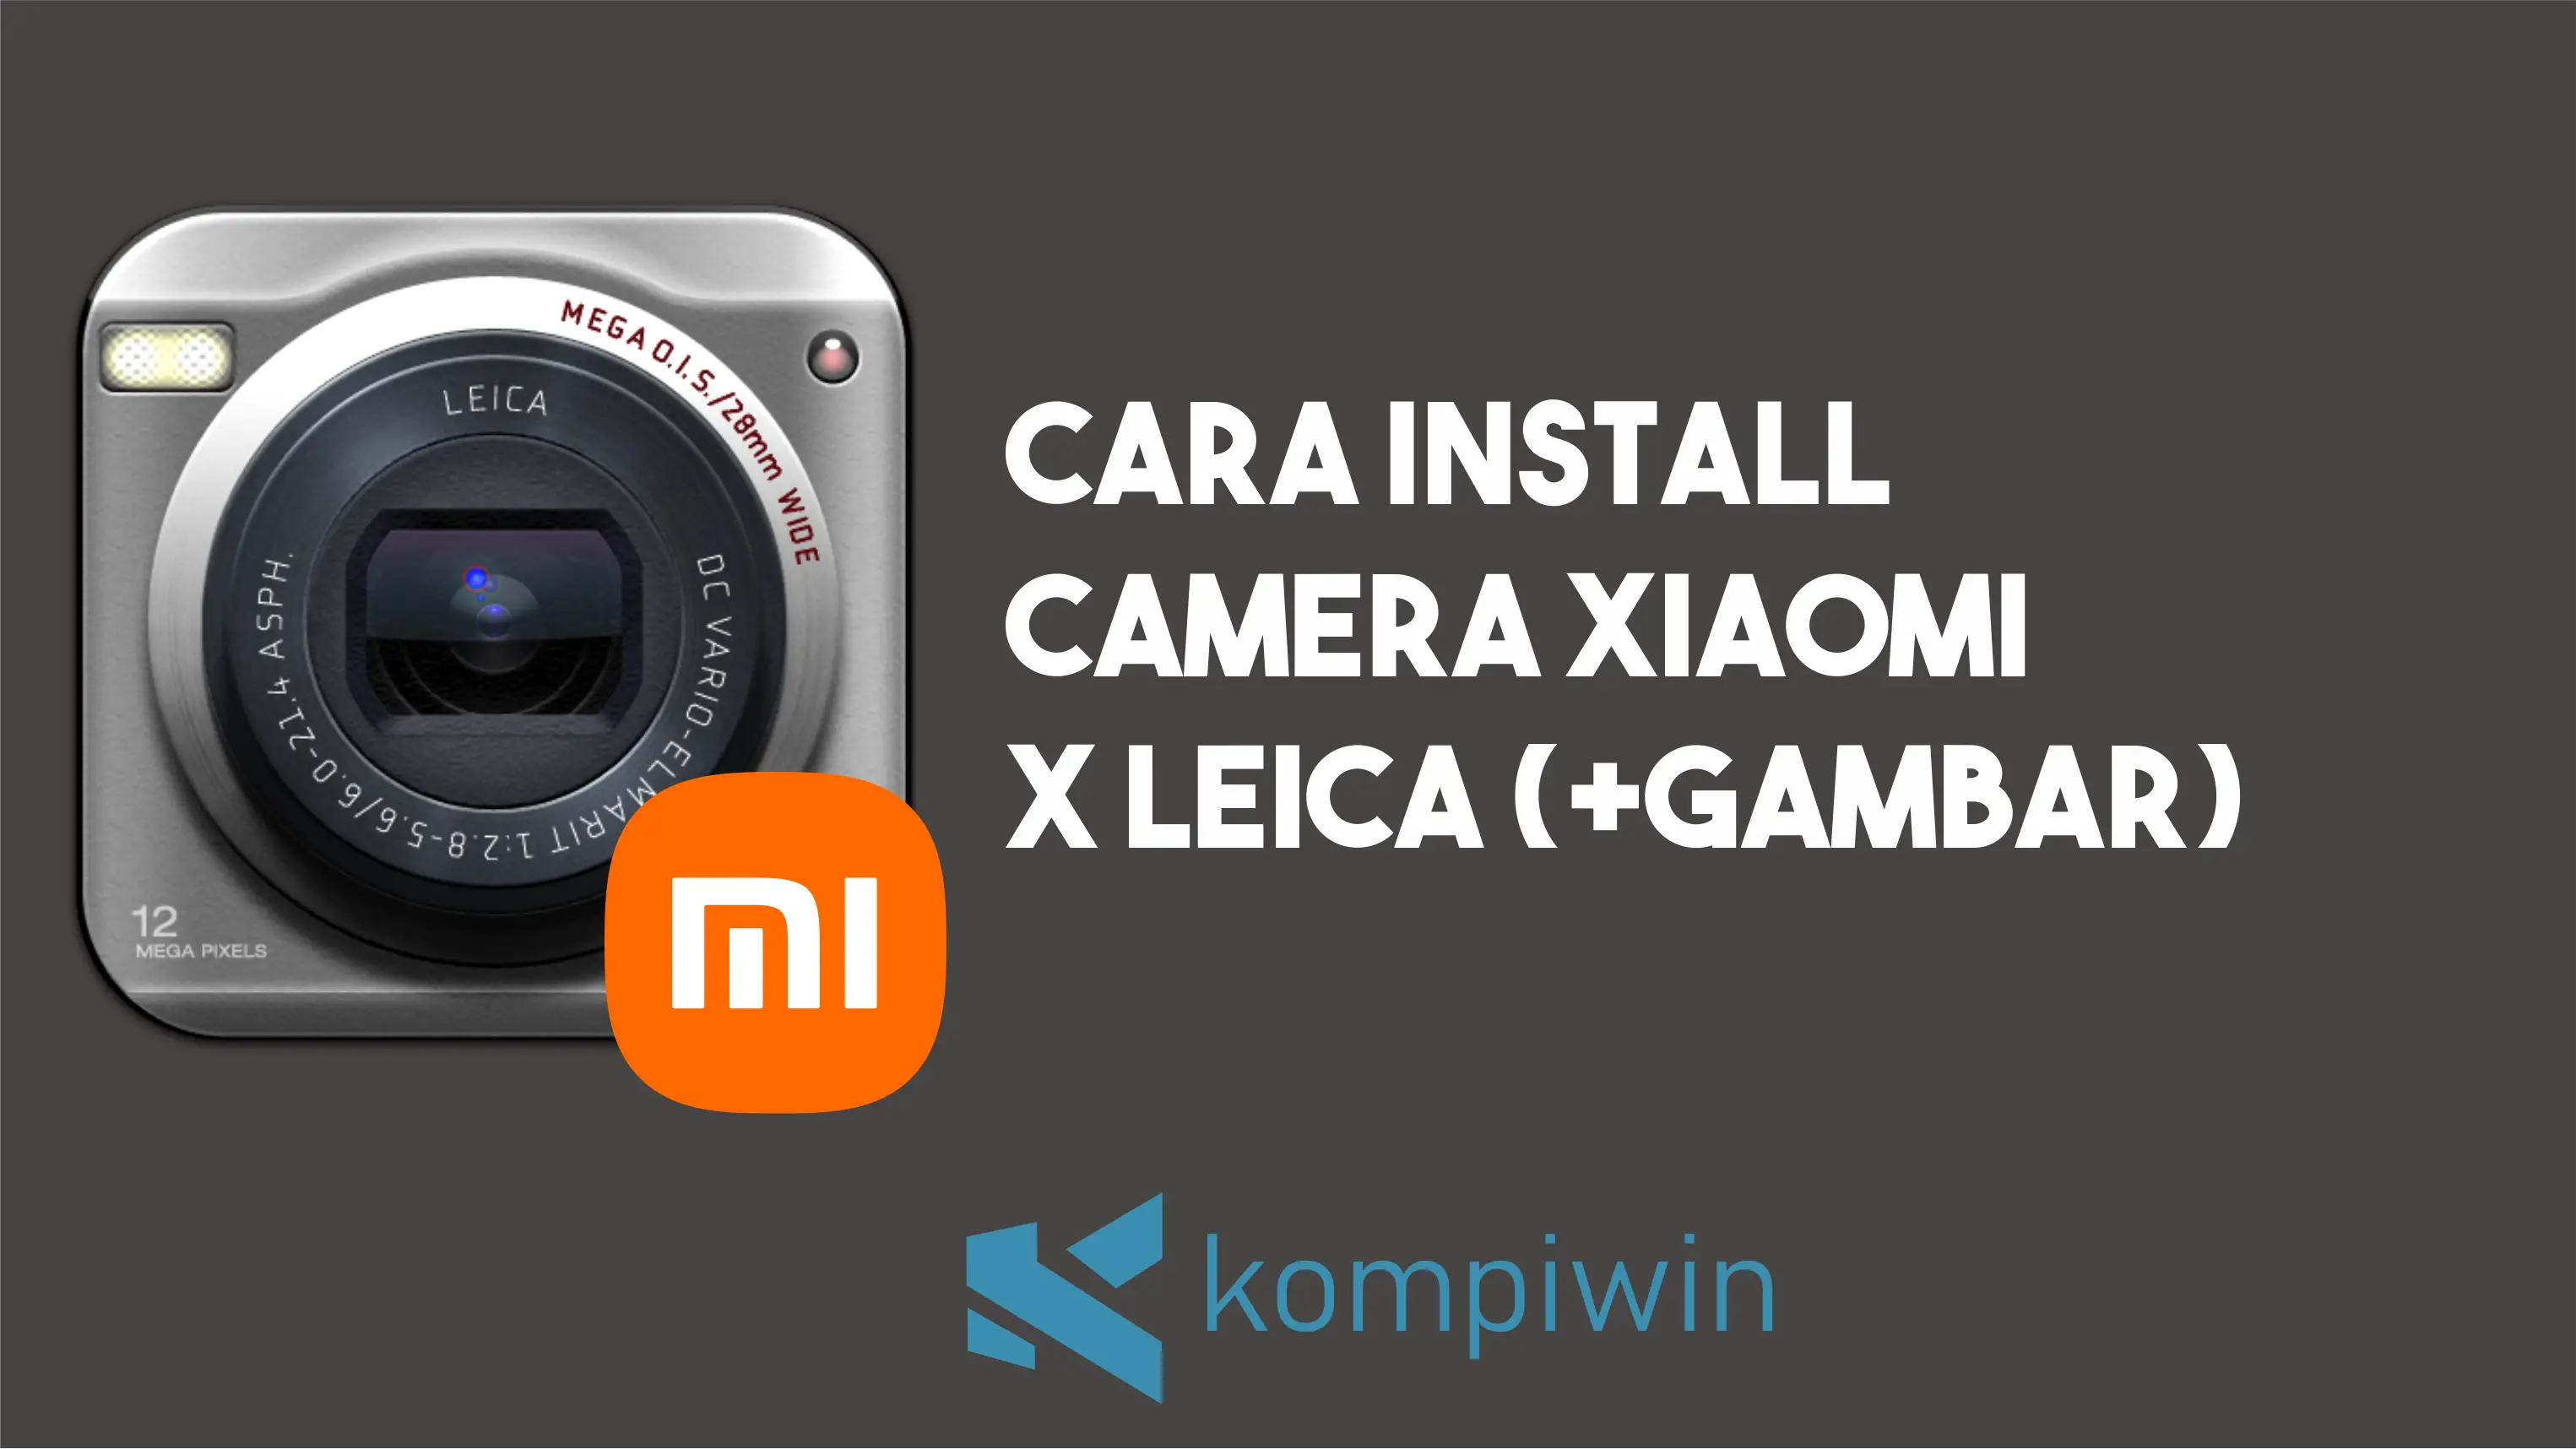 Cara Install Camera Xiaomi x Leica (+Gambar)